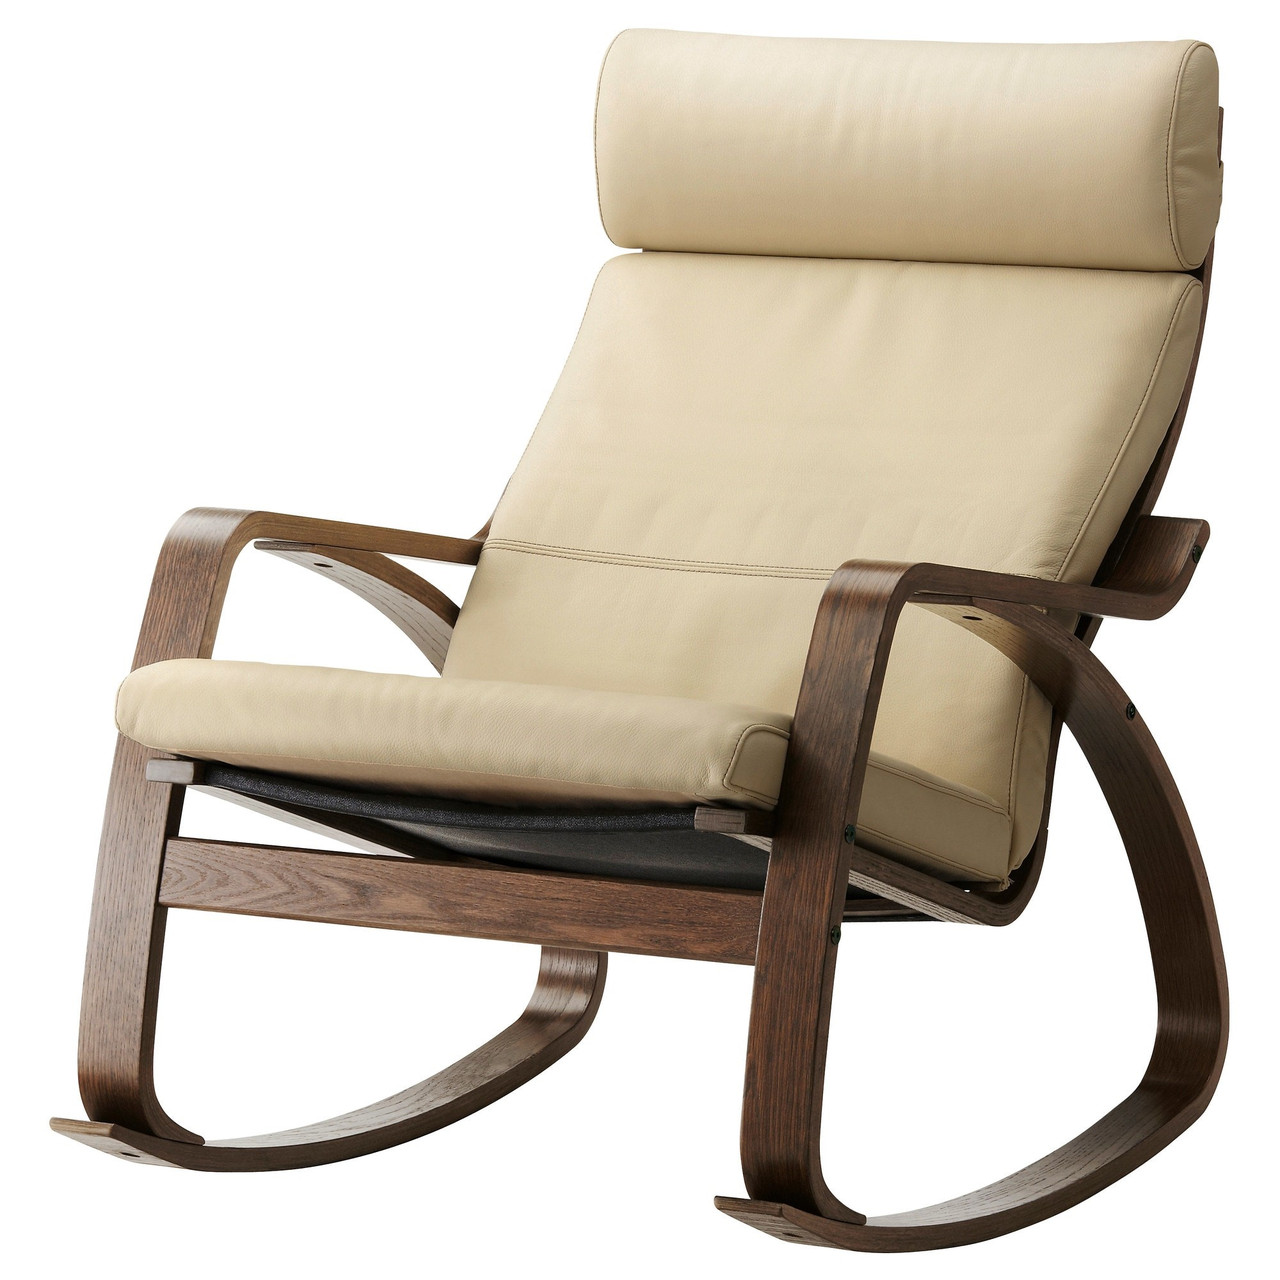 Кресло-качалка ПОЭНГ коричневый Глосе светло-бежевый ИКЕА, IKEA